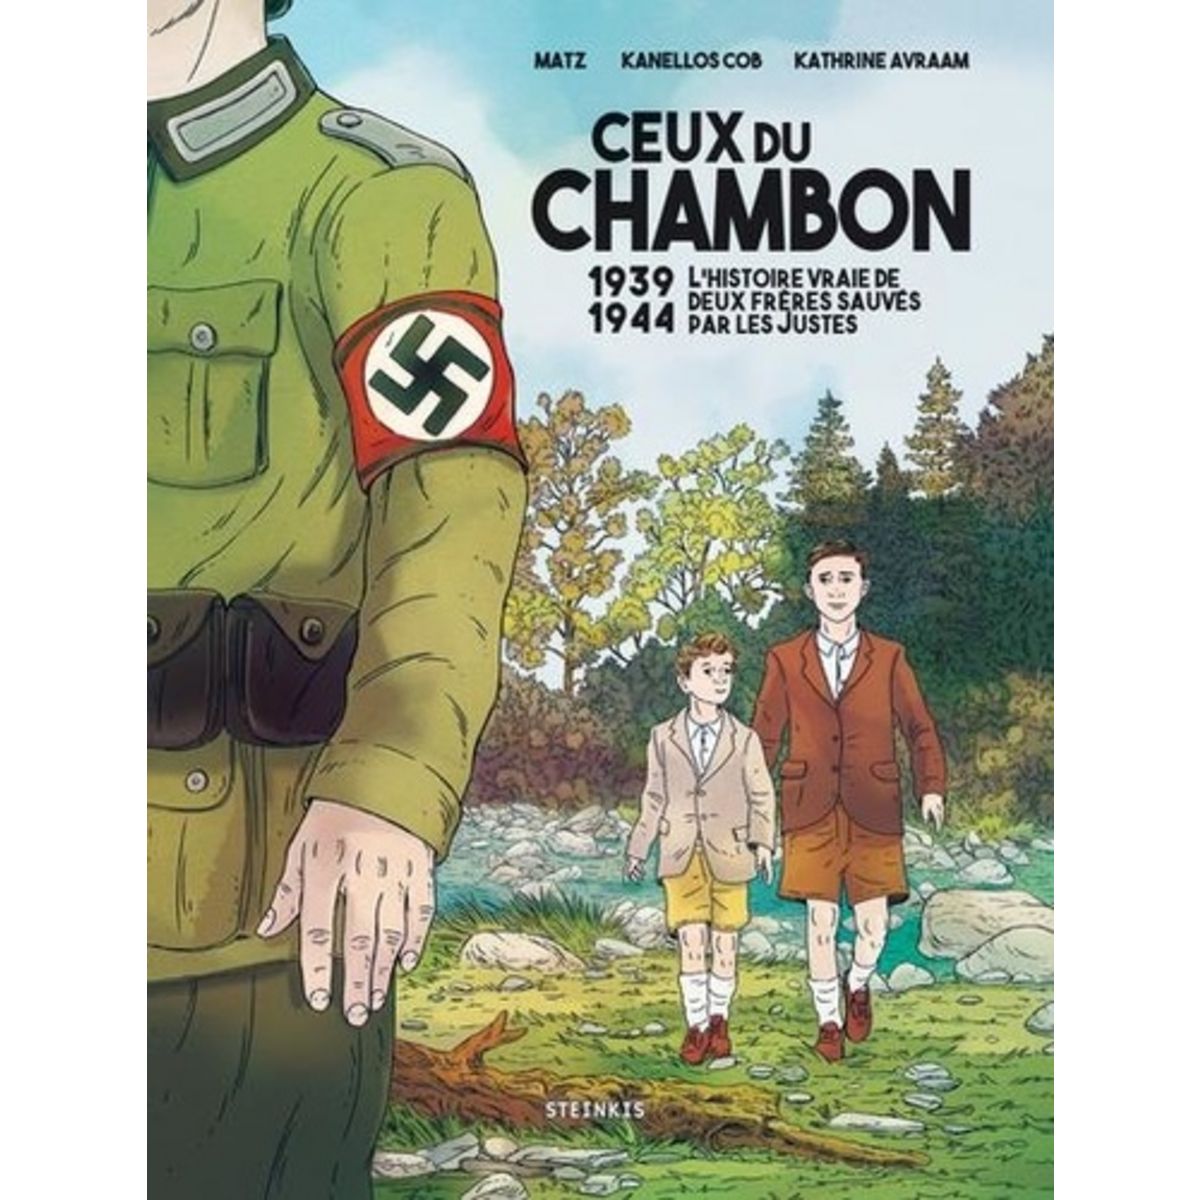  CEUX DU CHAMBON. 1939-1944 L'HISTOIRE VRAIE DE DEUX FRERES SAUVES PAR LES JUSTES, Matz